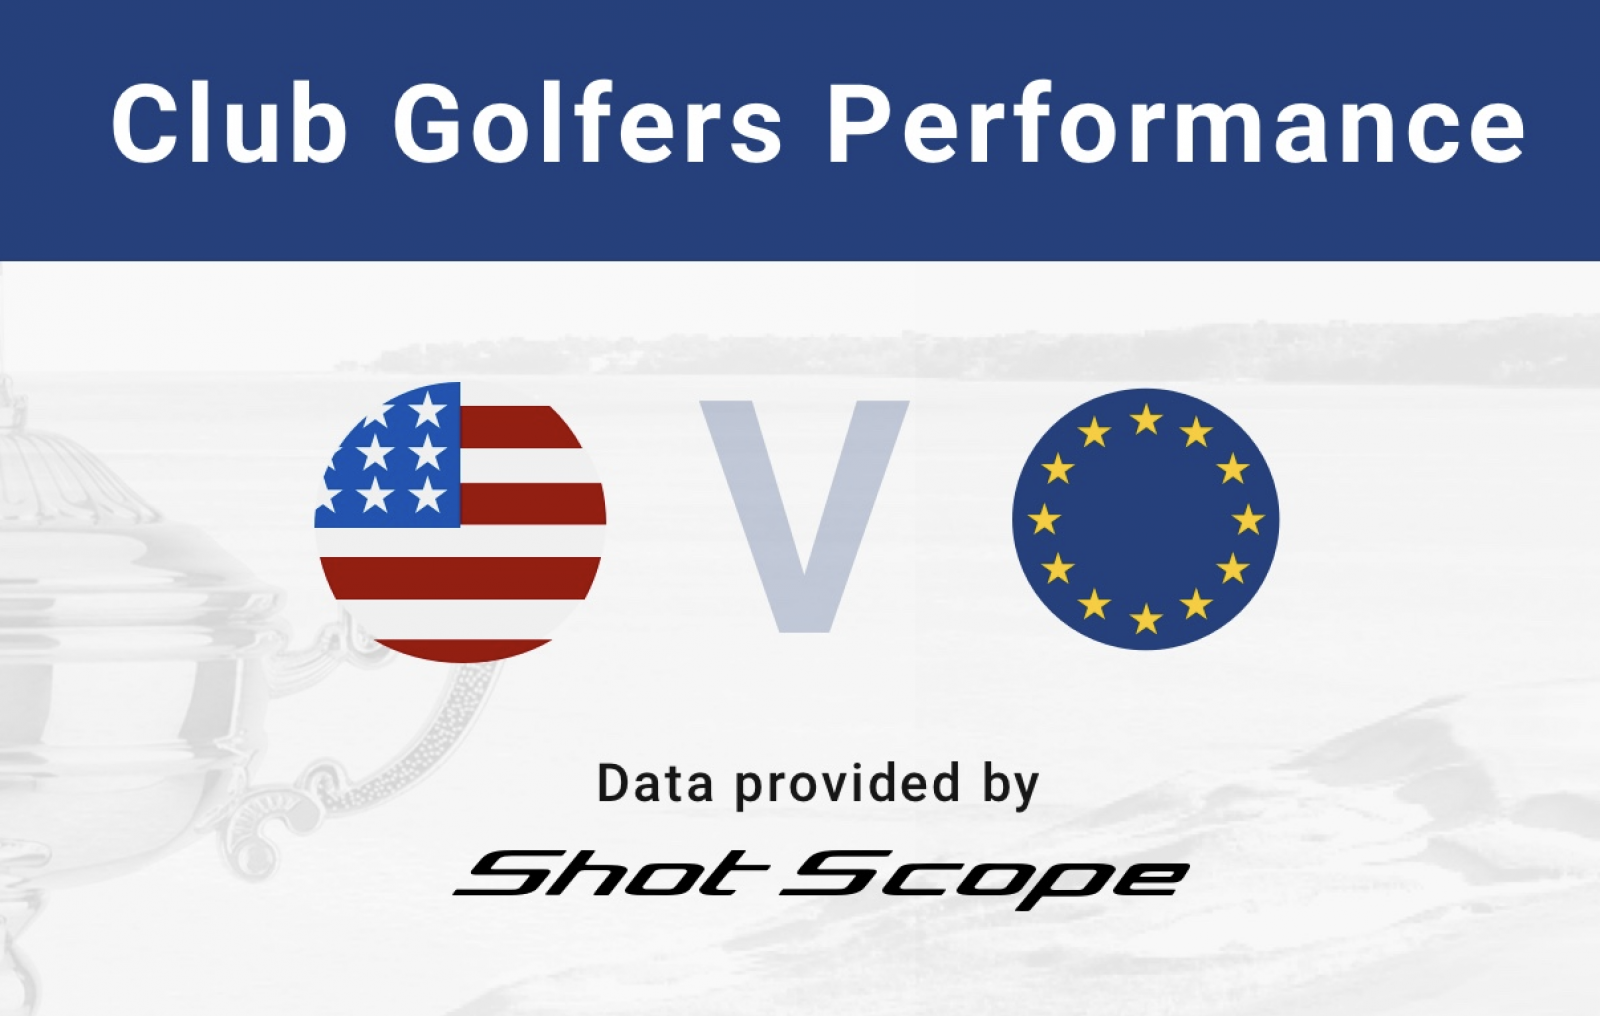 Las estadísticas de Shot Scope muestran que los golfistas de club europeos y estadounidenses están estrechamente igualados - Golf News |  Revista de golf